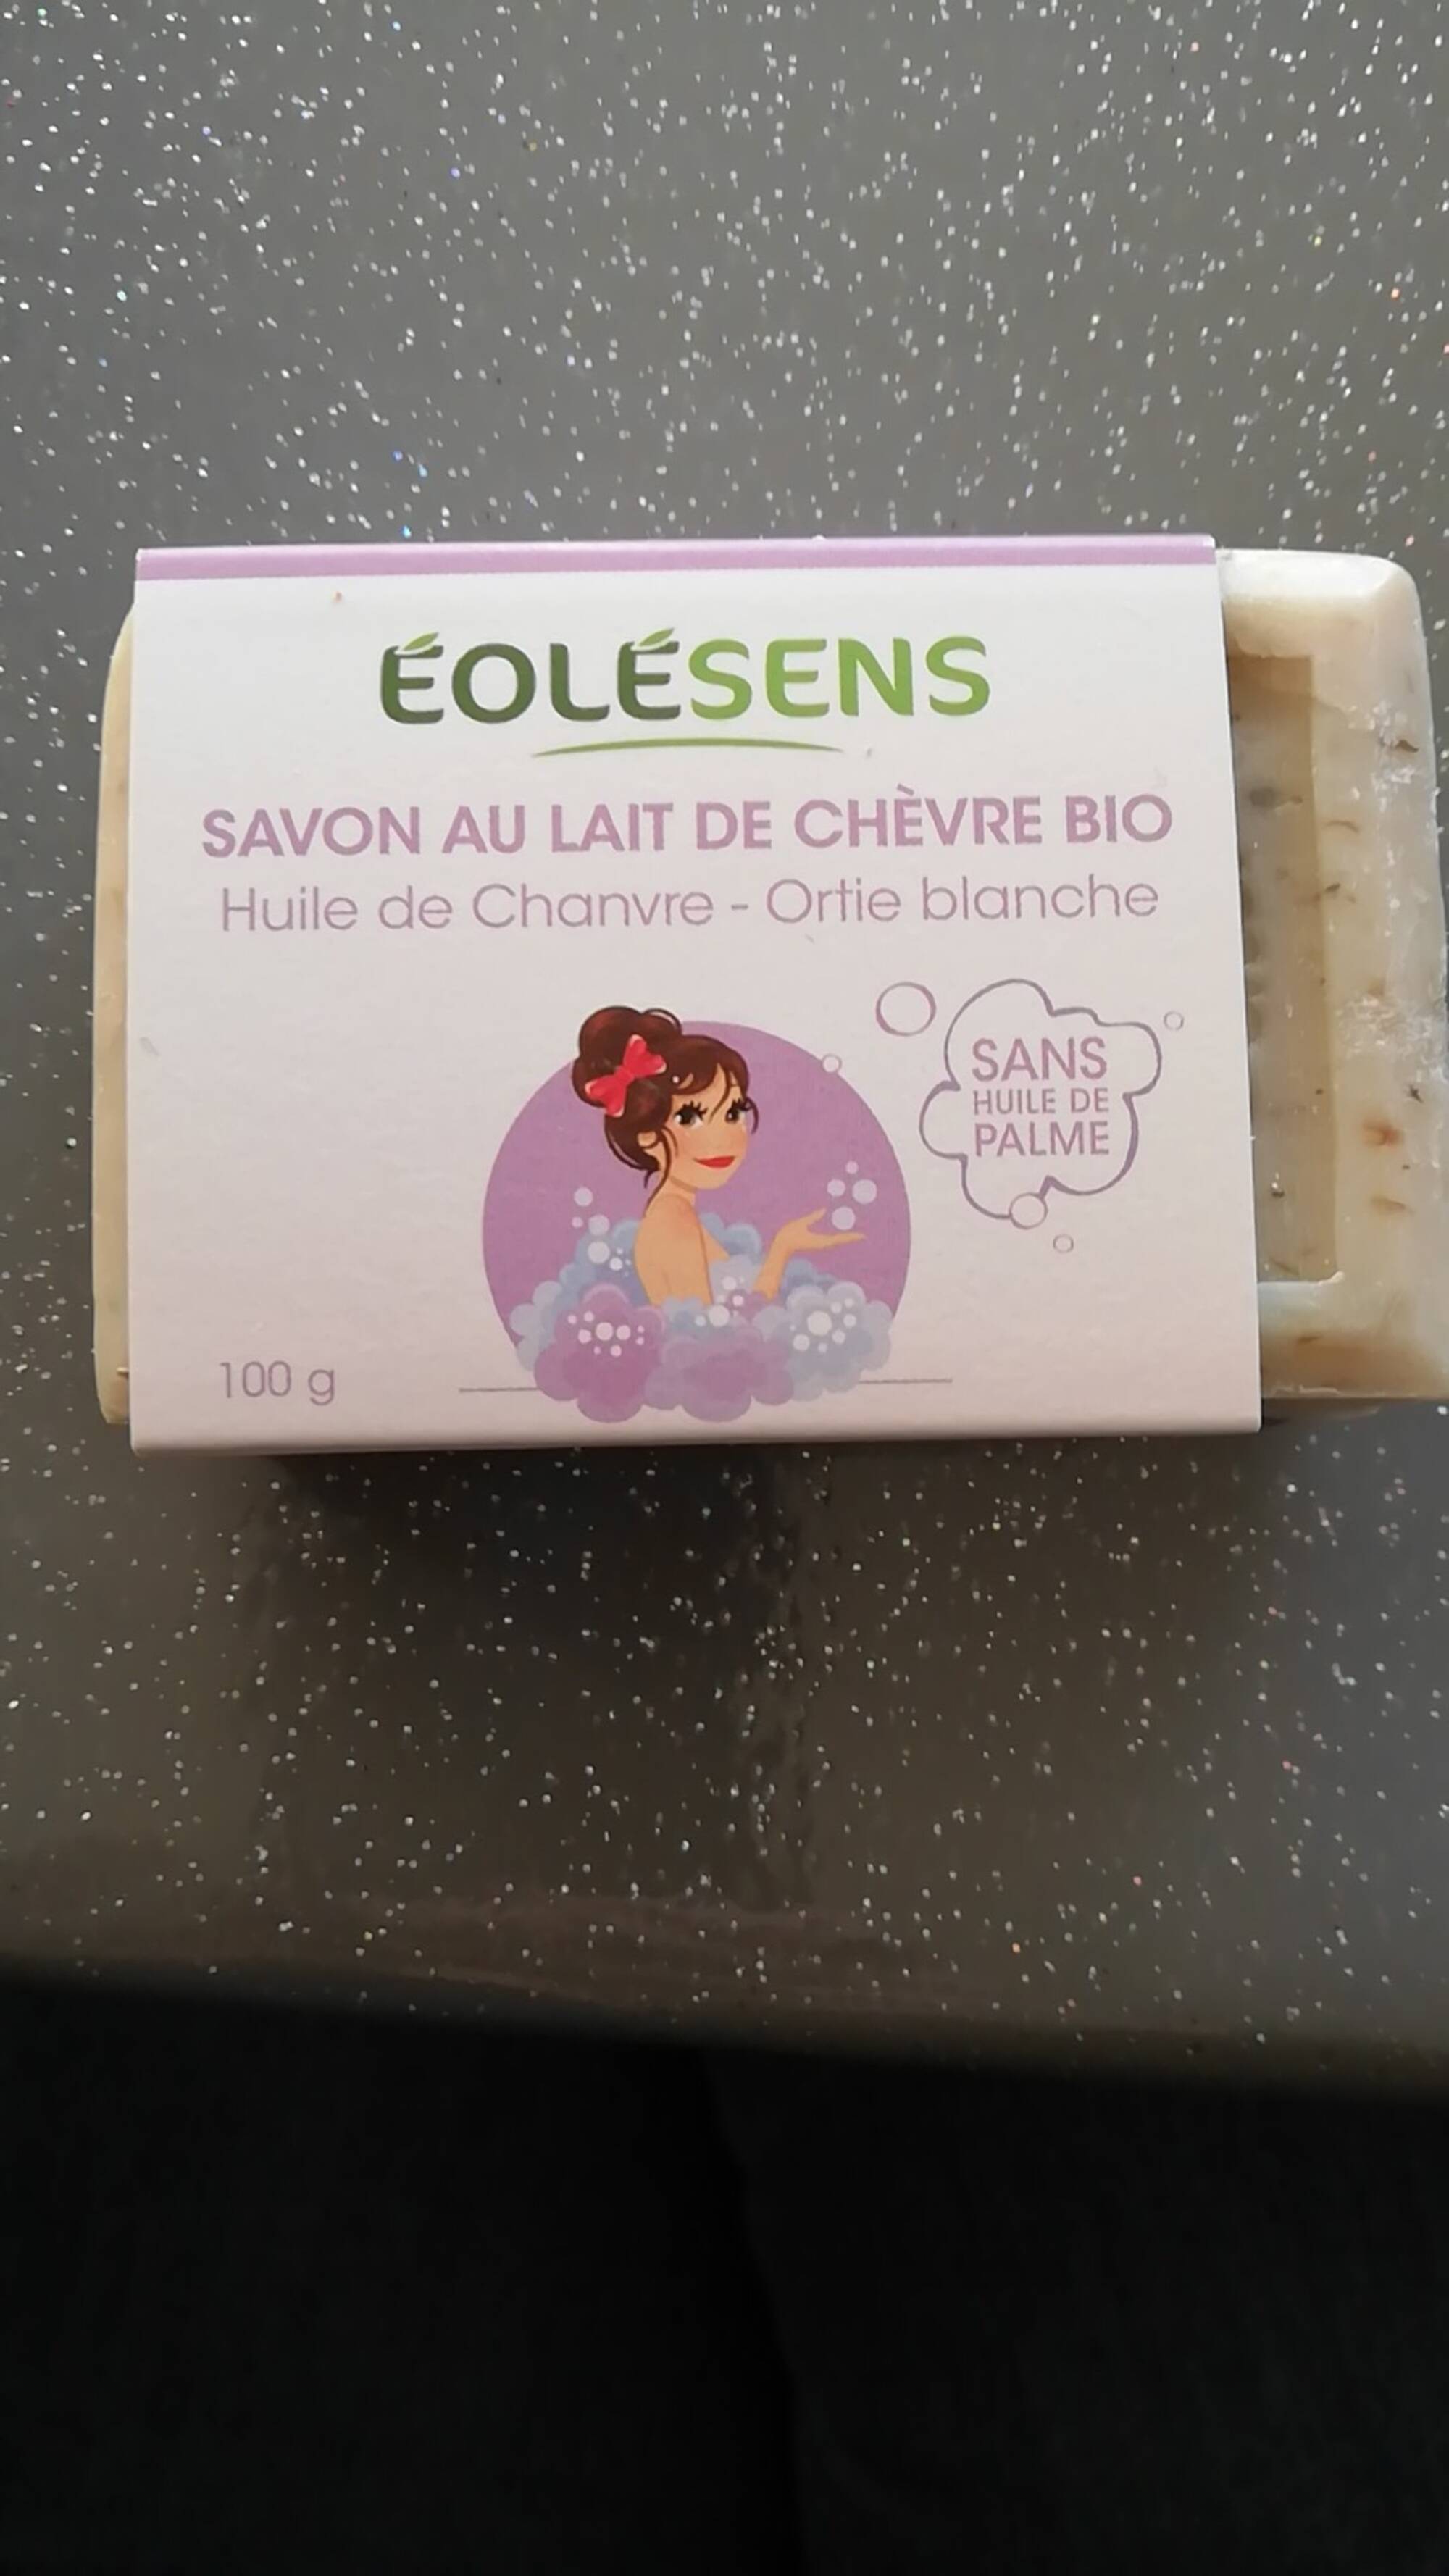 EOLESENS - Savon au lait de chèvre bio